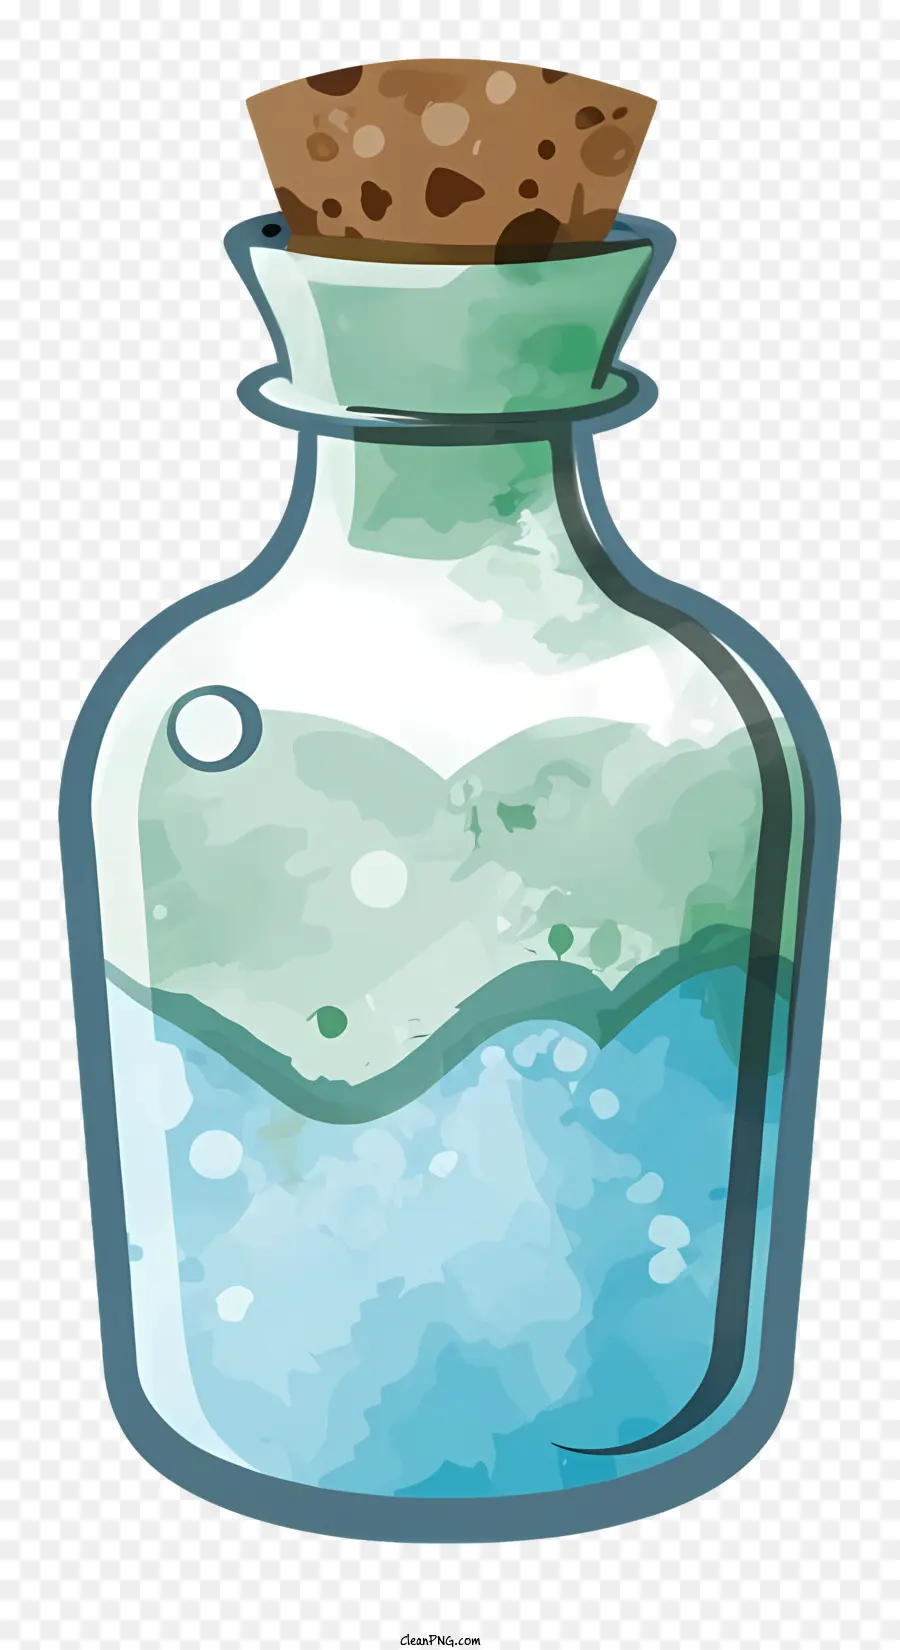 hoạt hình ly nhỏ chai màu xanh lam bong bóng trong vắt kính - Chai thủy tinh nhỏ với chất lỏng màu xanh và bong bóng